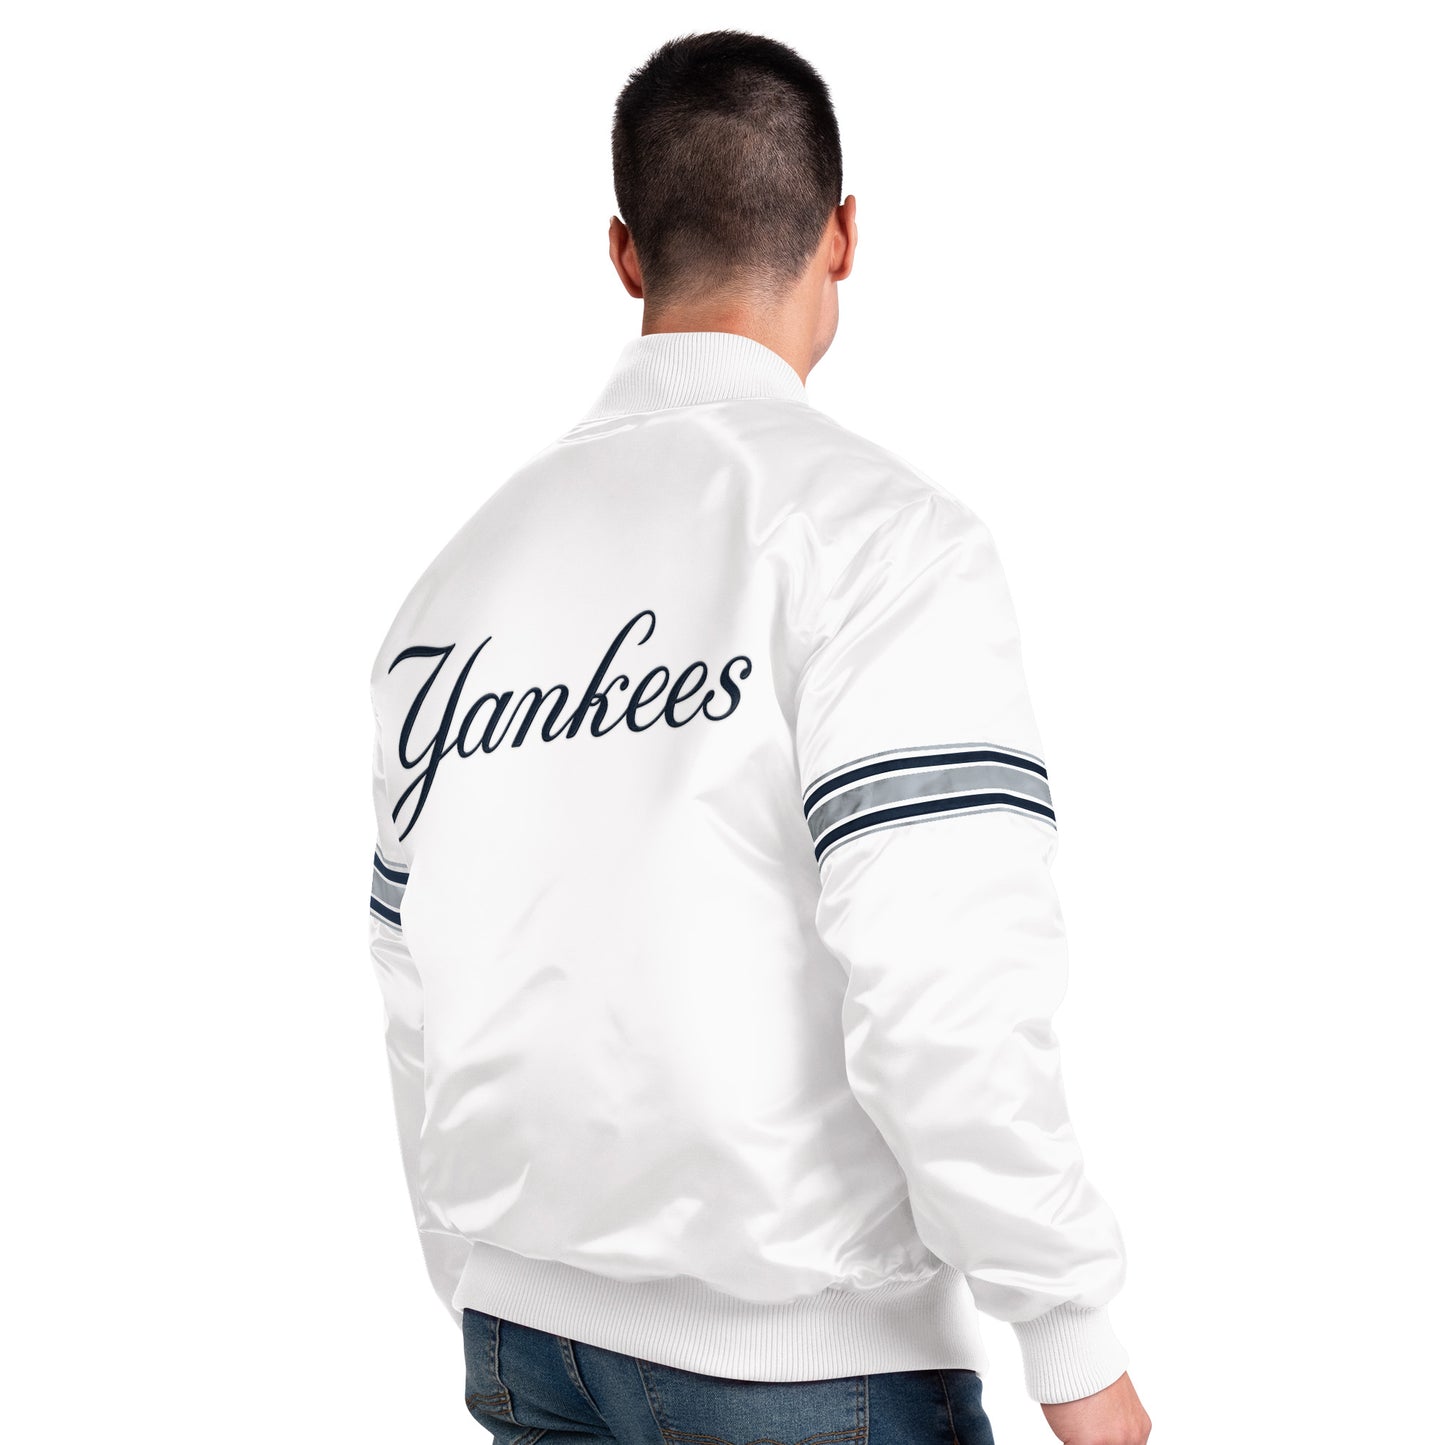 New York Yankees Starter The Power Forward Full-Snap Jacket - White